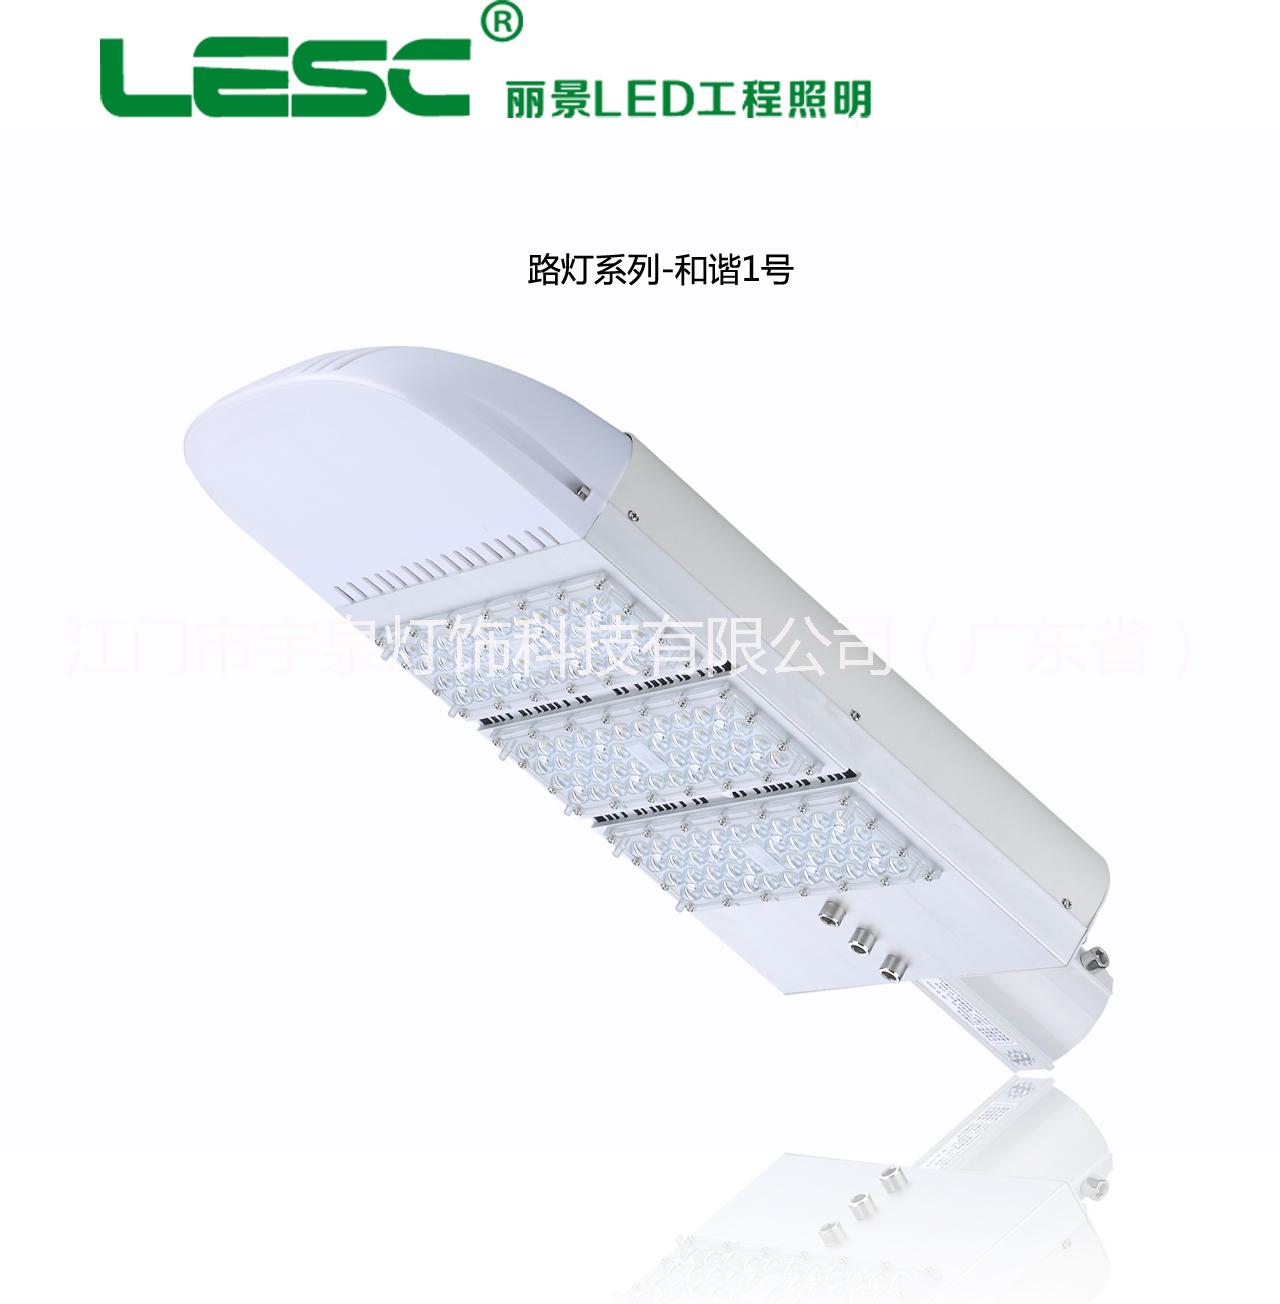 广东江门厂家供应大功率LED路灯照明热销新型节能环保路灯系列和谐一号图片